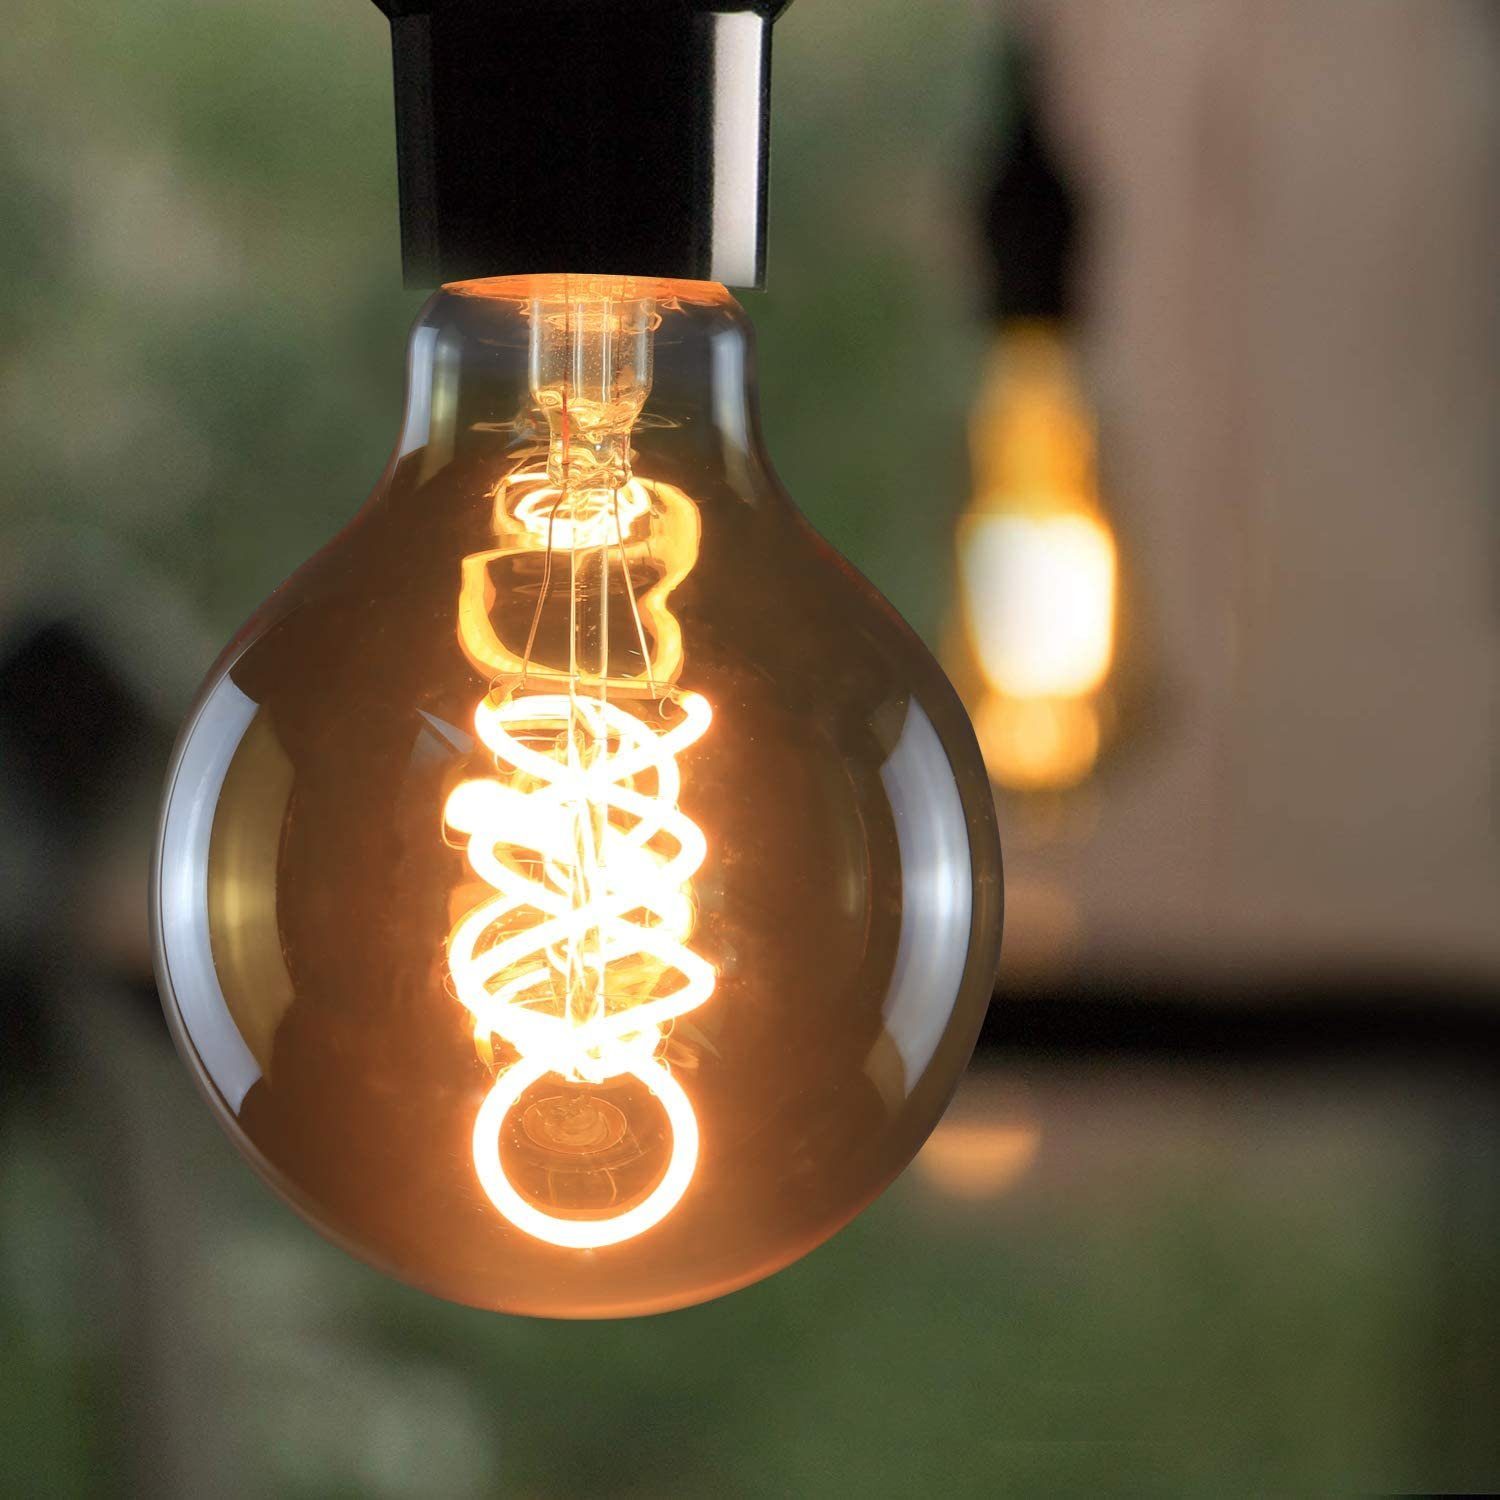 ZMH »Edison Glühbirne 4W, G80 Retro Kugel Glühlampe Dekorative Globelampen  Warmweiß Filament Birne« LED-Leuchtmittel, 3 Stück online kaufen | OTTO